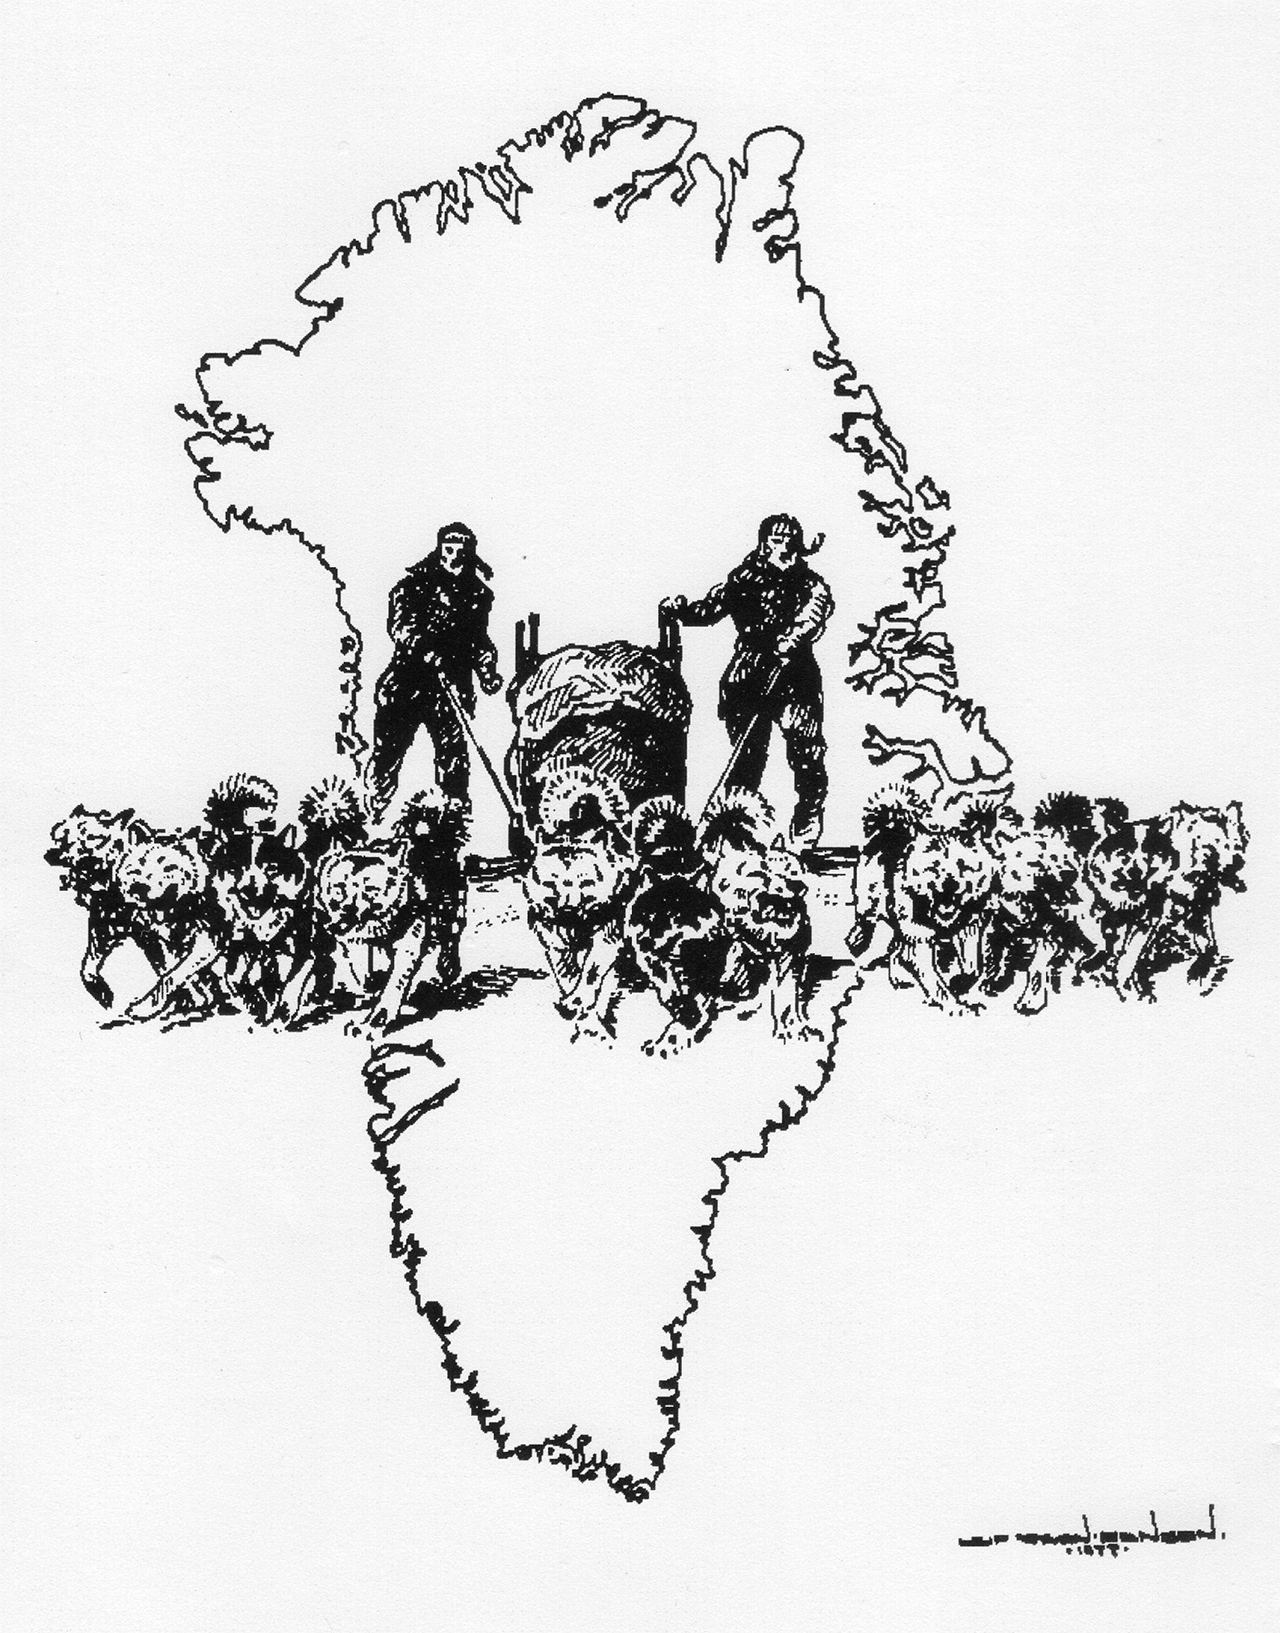 Slædepatruljen Sirius tegning, af Leif Ragn-Jensen 1977